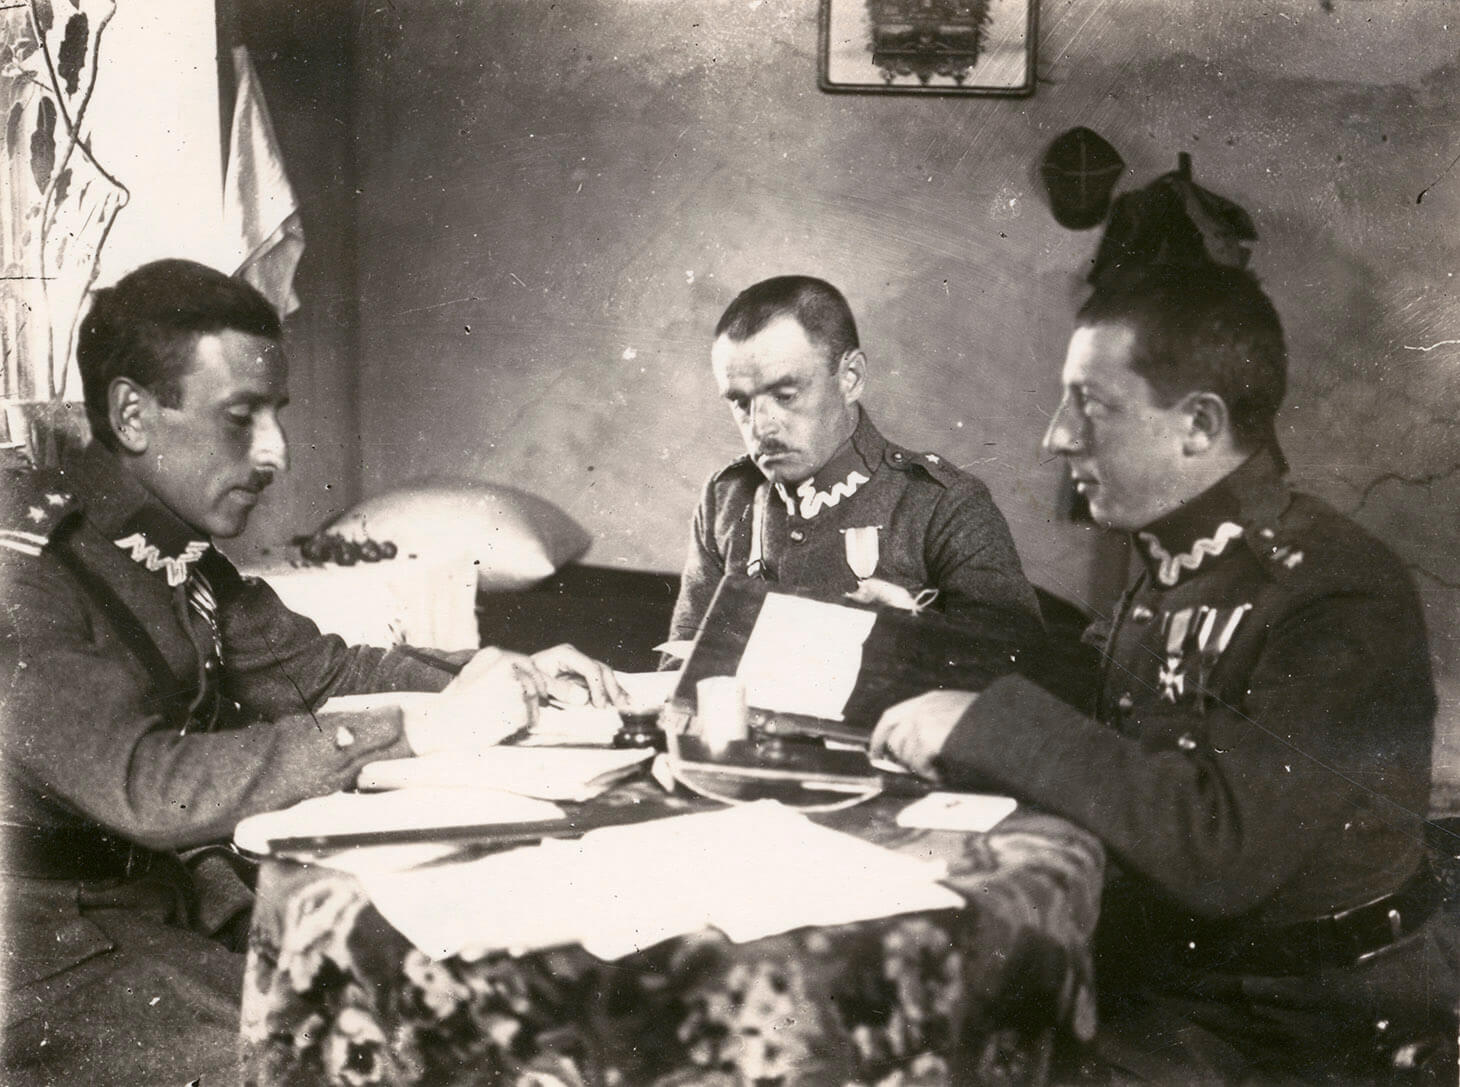 Zdjęcie we wnętrzu mieszkalnym. Trzech oficerów siedzi przy okrągłym stole. Światło wpada przez okno po lewej stronie kadru. 
Na pierwszym planie widać blat z kwiecistym obrusem, na nim rozłożone papiery. Pierwszy od lewej, siedzi prawym bokiem do obiektywu,  adiutant pułkownika Stanisława Skwaczyńskiego. Żołnierz ubrany jest w mundurze spięty pasem z koalicyjką. Ręce ma oparte o krawędź stołu, w prawej dłoni trzyma pióro. Drugi od lewej siedzi pułkownik Stanisław Skwarczyński. W ujęciu, w lekkim zwrocie w prawo, czyta jakiś dokument. Trzeci od lewej, pokazany jest drugi adiutant pułkownika. Żołnierz pokazany jest z lewego boku. Trzyma lewą rękę opartą o krawędź stołu i patrzy na wprost, na swojego kolegę. W głębi kadru, po lewej stronie, w narożniku pomieszczenia, widać poduszkę, leżącą na małej kanapie. Nad nią, na ścianie wisi obraz lub lustro w ramce. Po prawej stronie, na ścianie wisi czapka rogatywka i płaszcz wojskowy.
